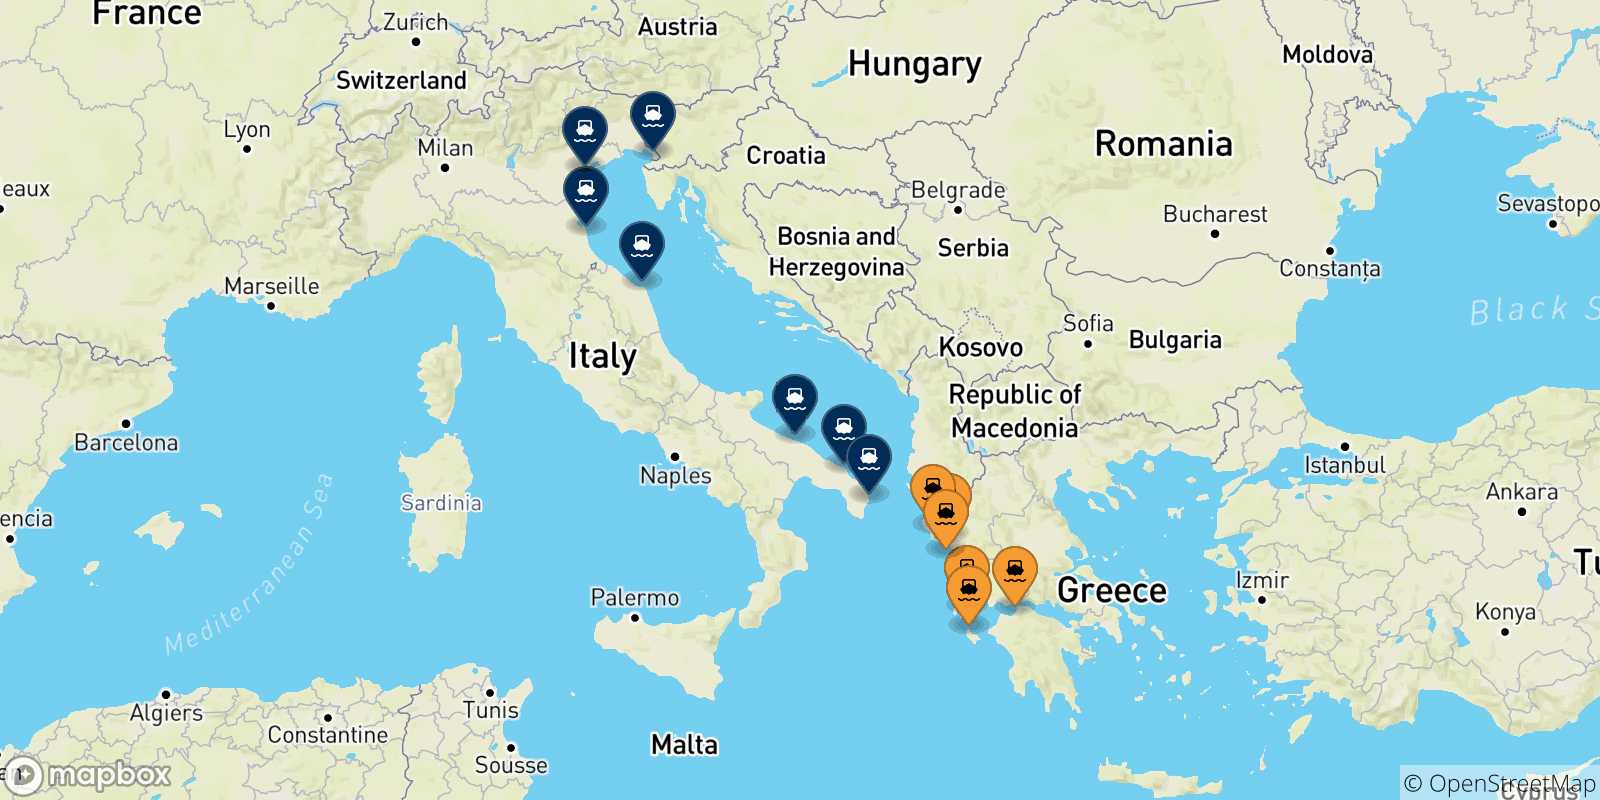 Mappa delle possibili rotte tra la Grecia e l'Italia